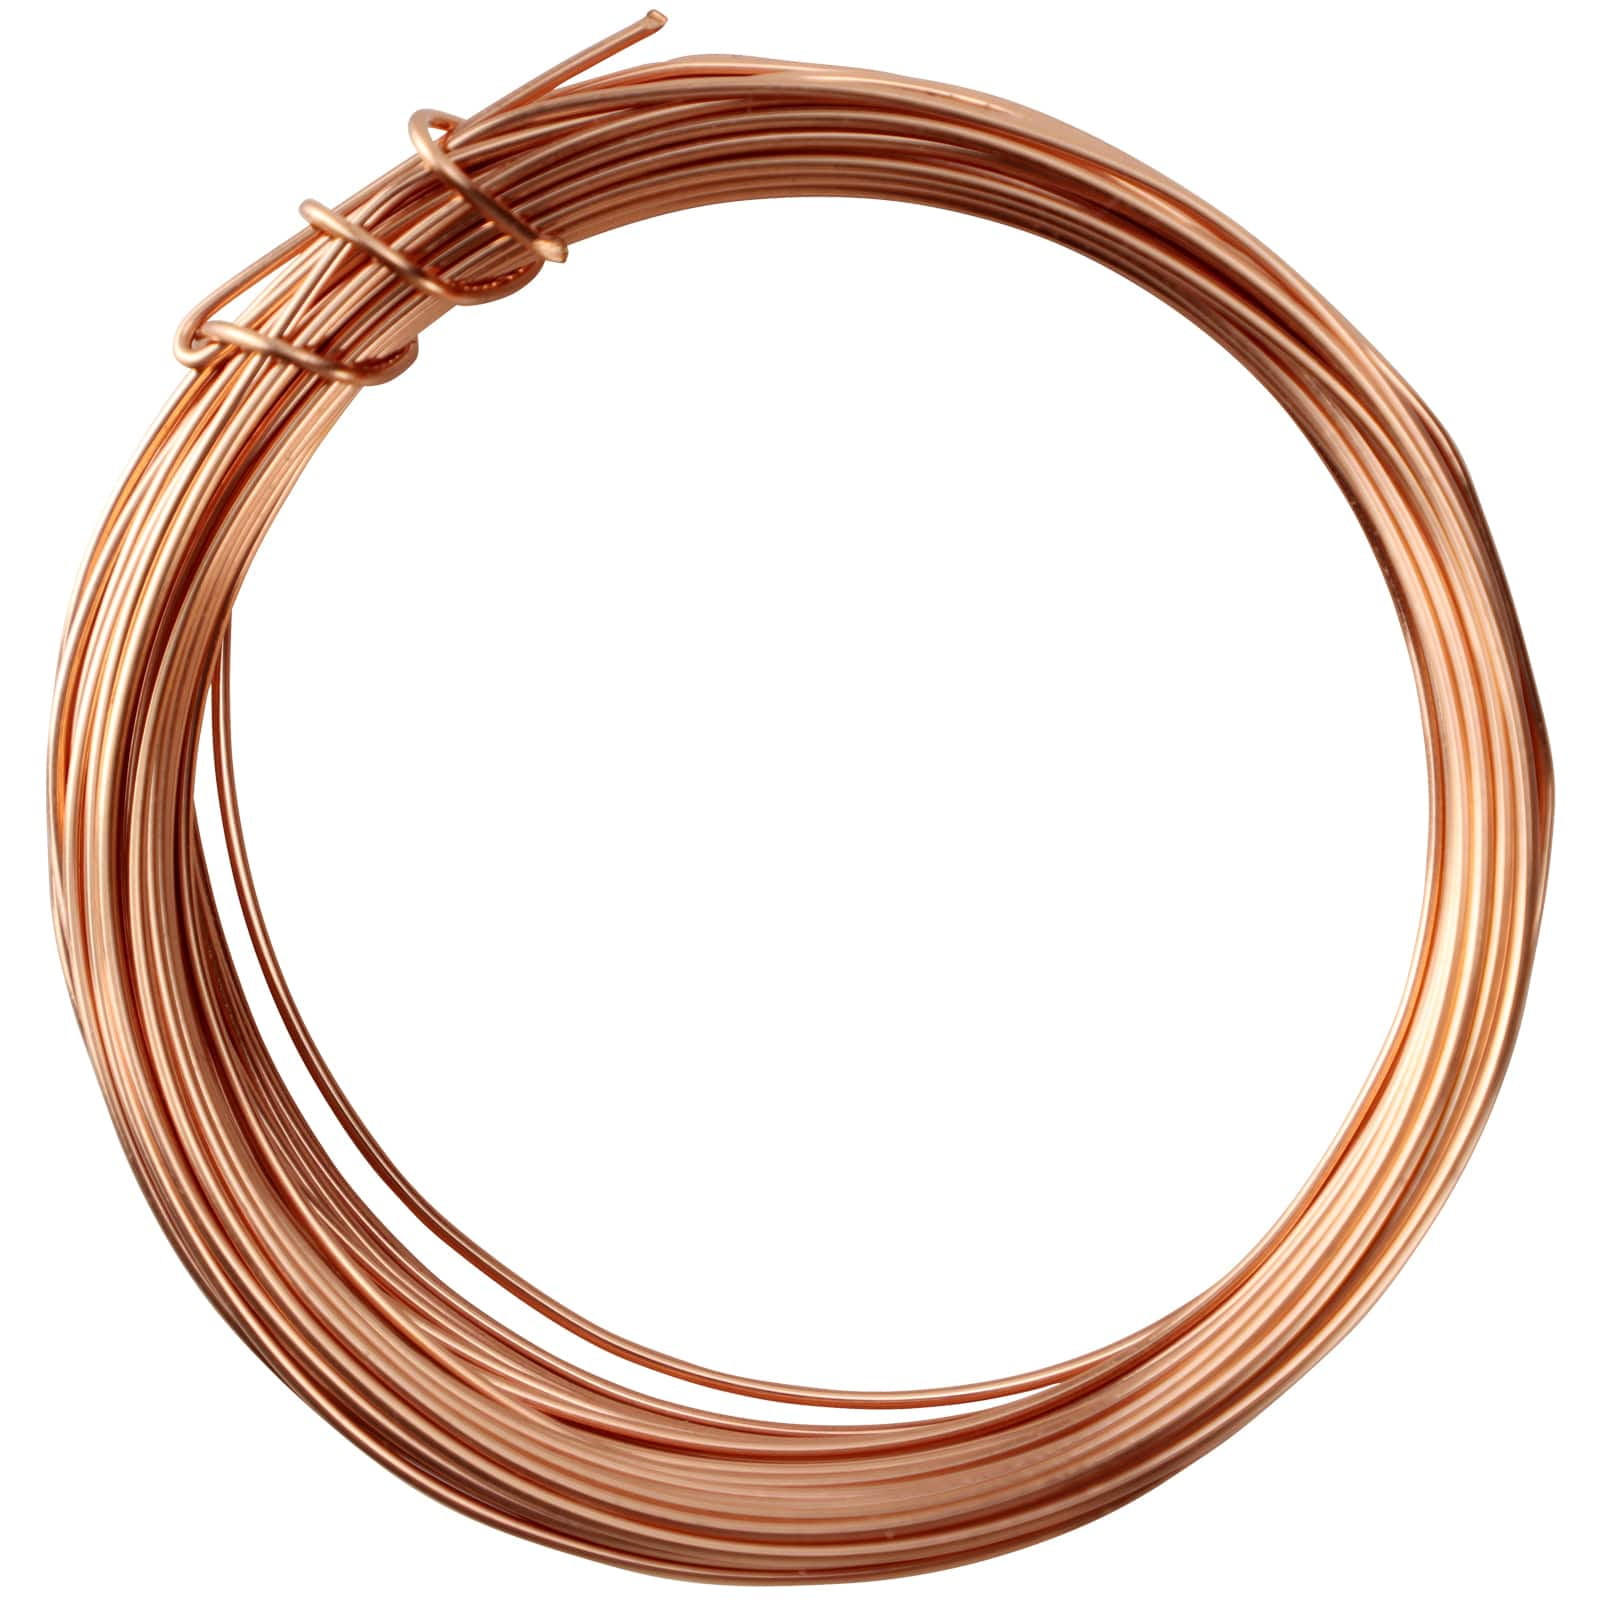 Wild Wire Colored Copper Craft Wire, LAVENDER, Round Wire, 26 Gauge, NIB